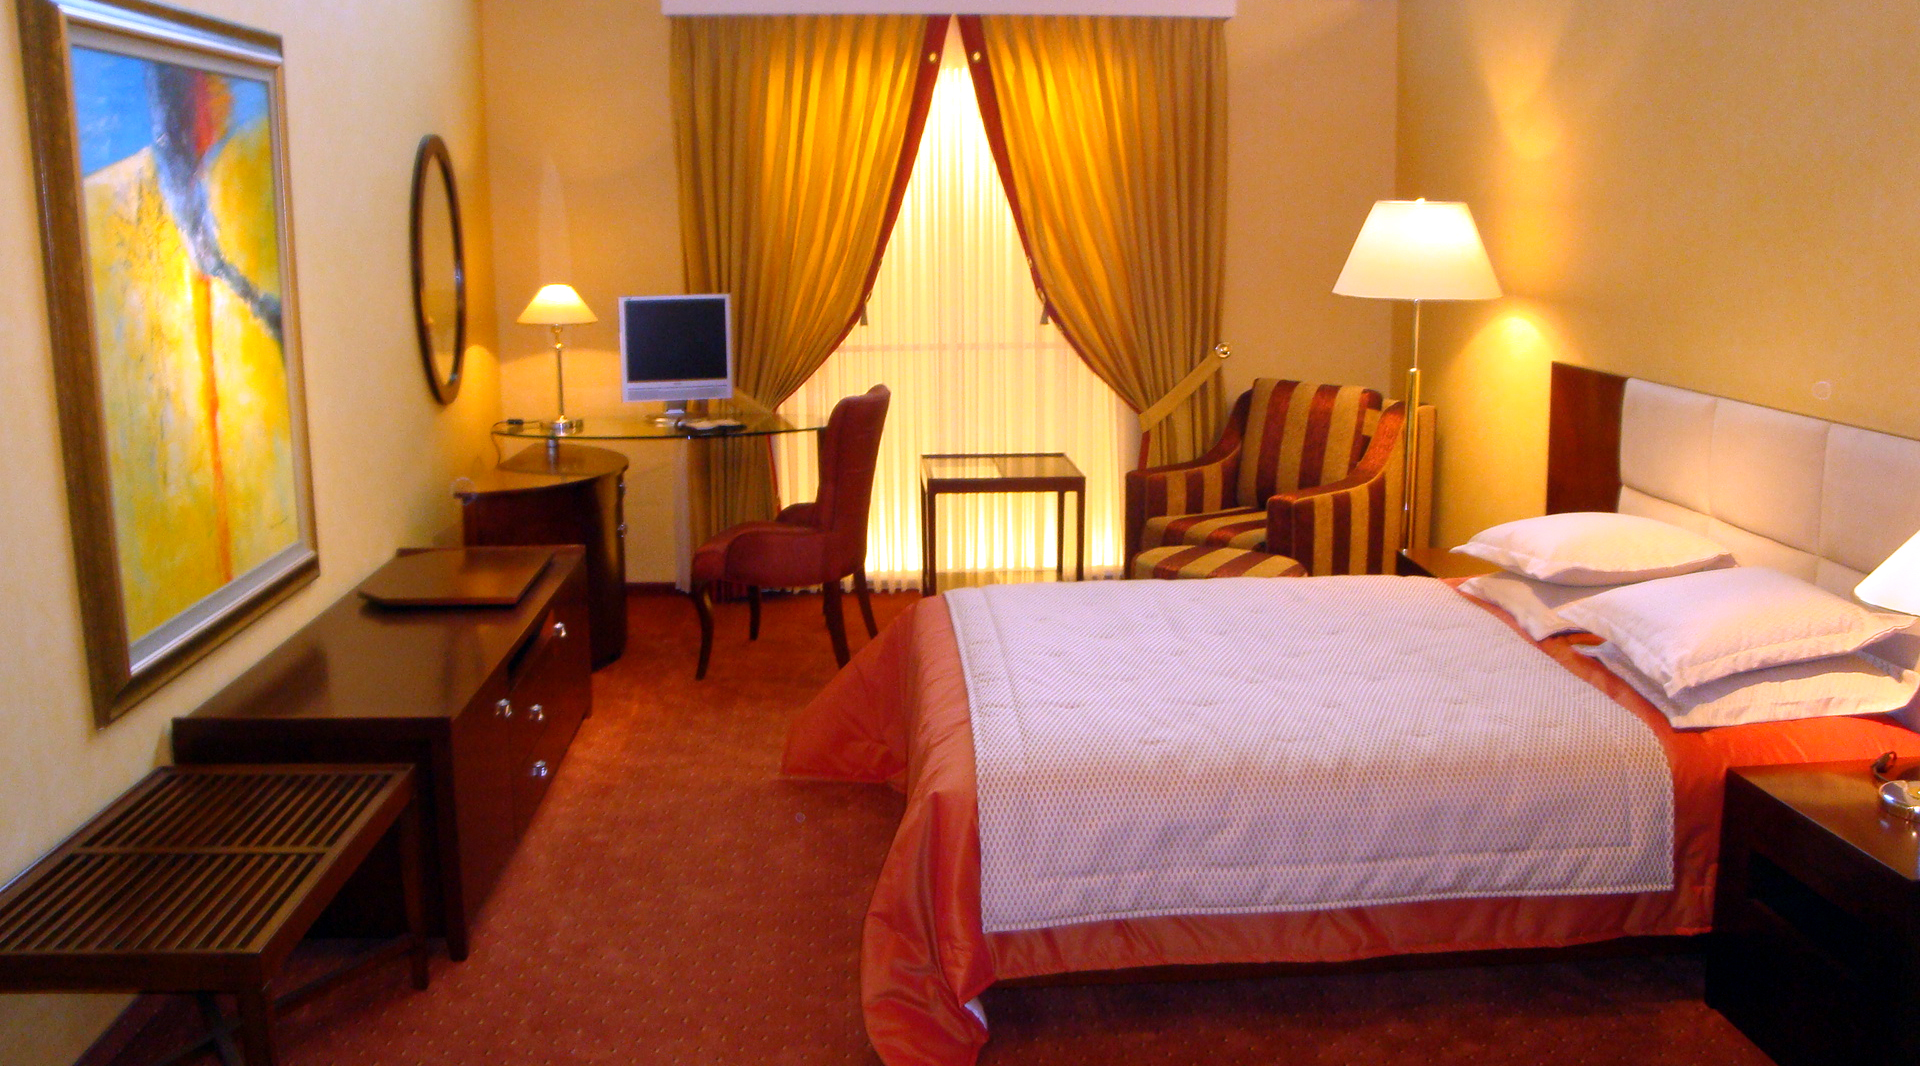 Hotelzimmer mit Doppelbett.